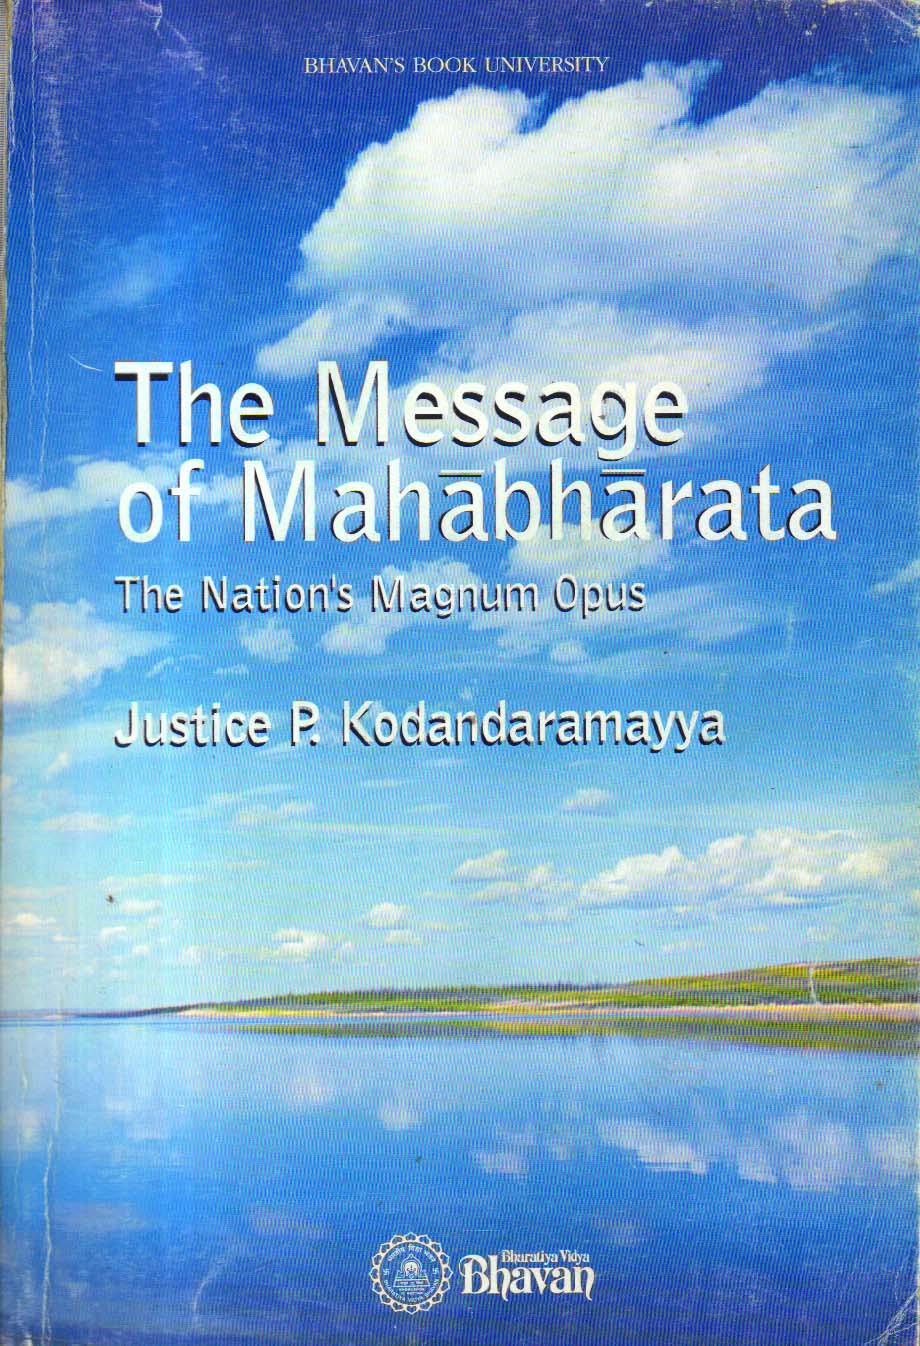 The Message of Mahabharata.